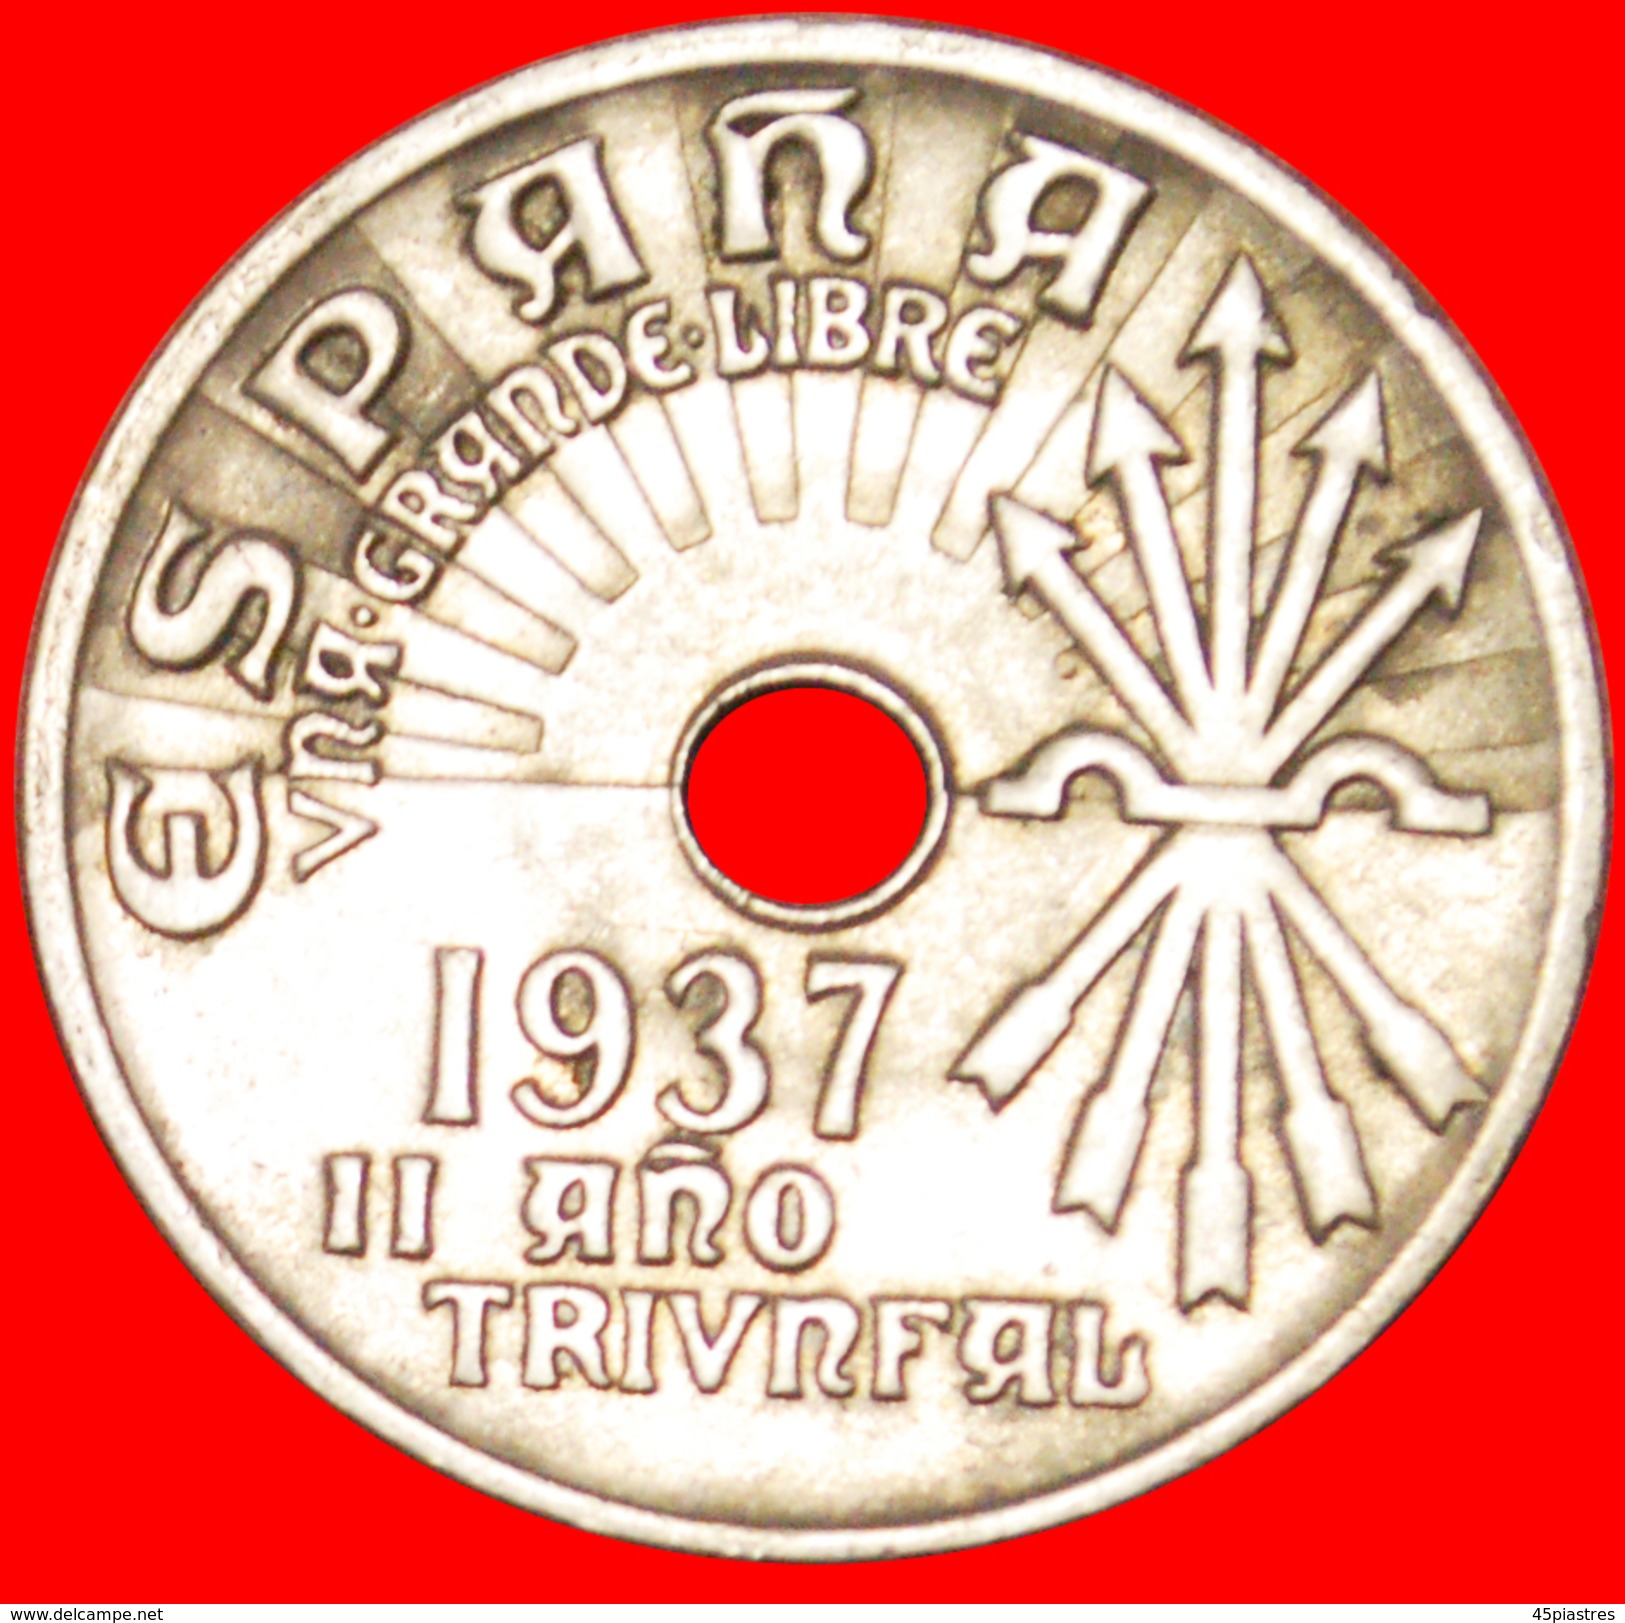 § AUSTRIA: SPAIN &#x2605; 25 CENTIMOS 1937! LOW START&#x2605; NO RESERVE! - Zona Nazionalista